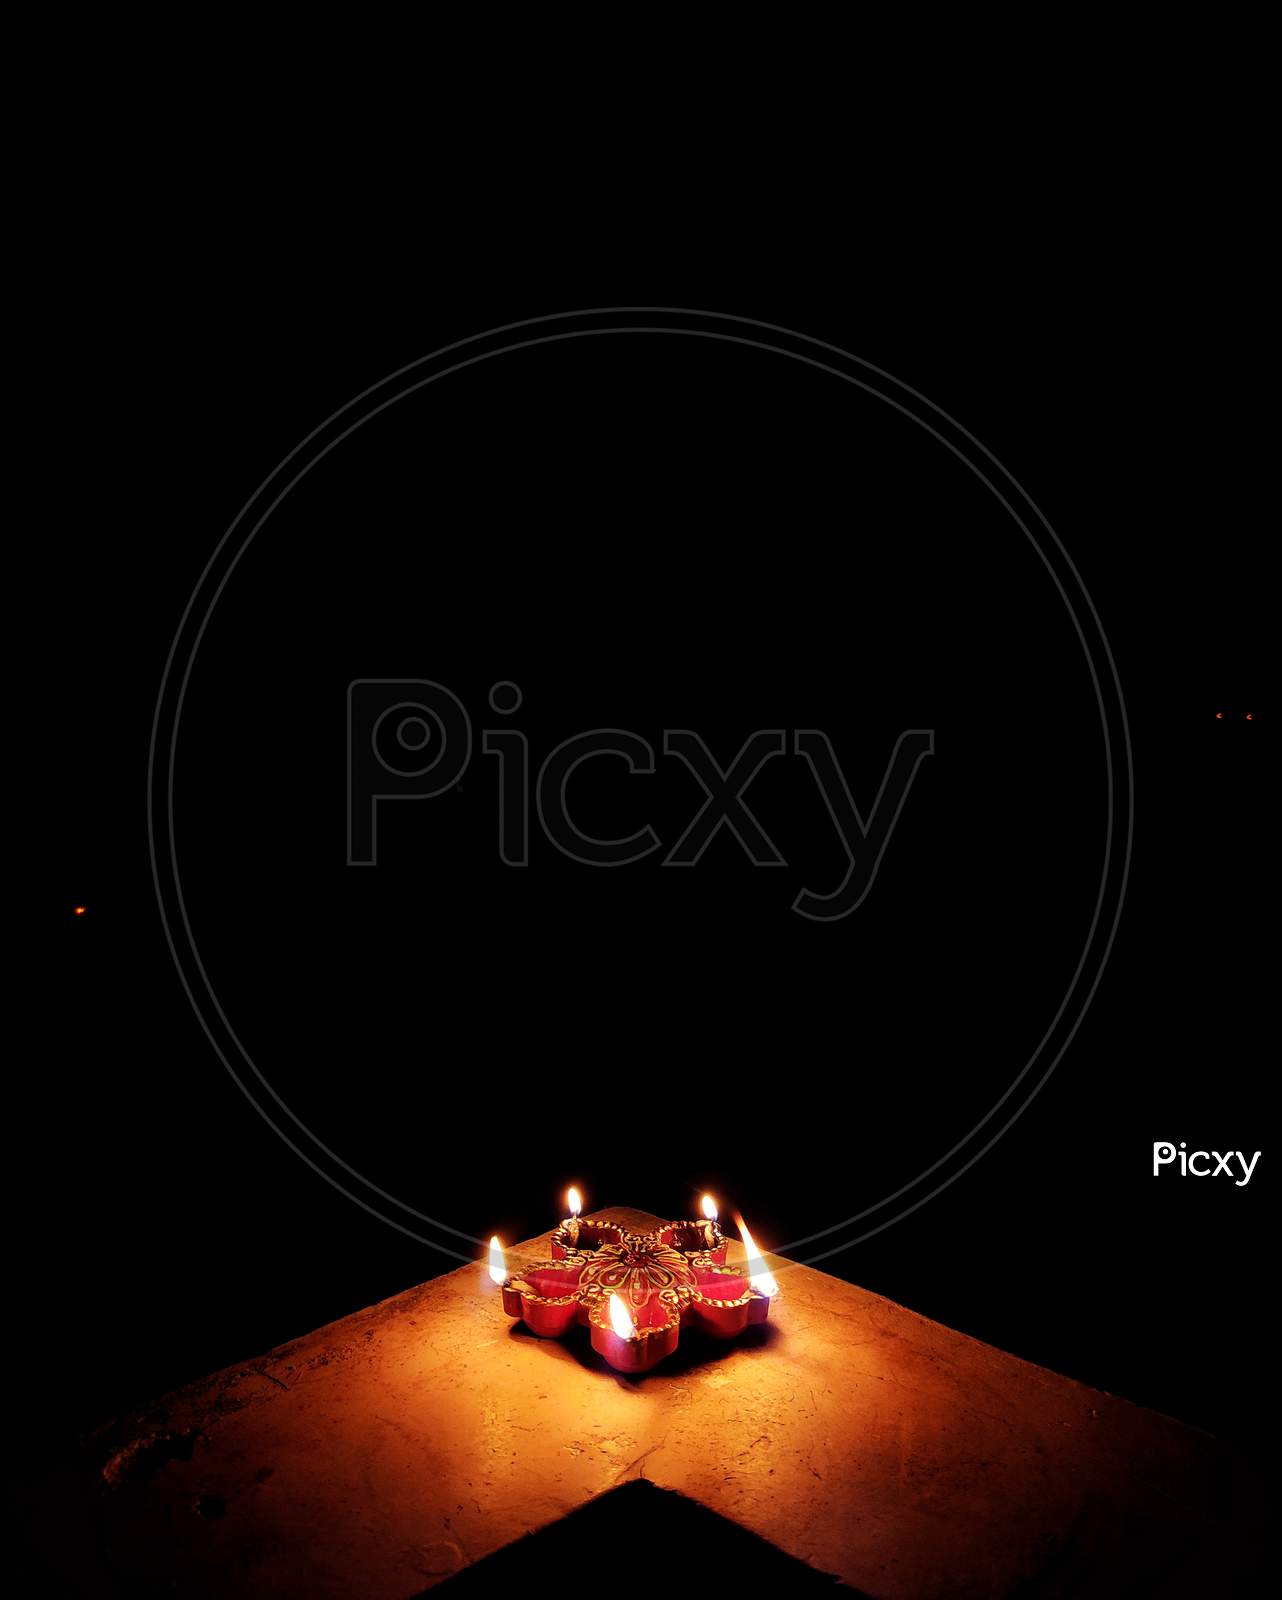 Diya on the occasion of Diwali in dark background. Indian festival Diwali.